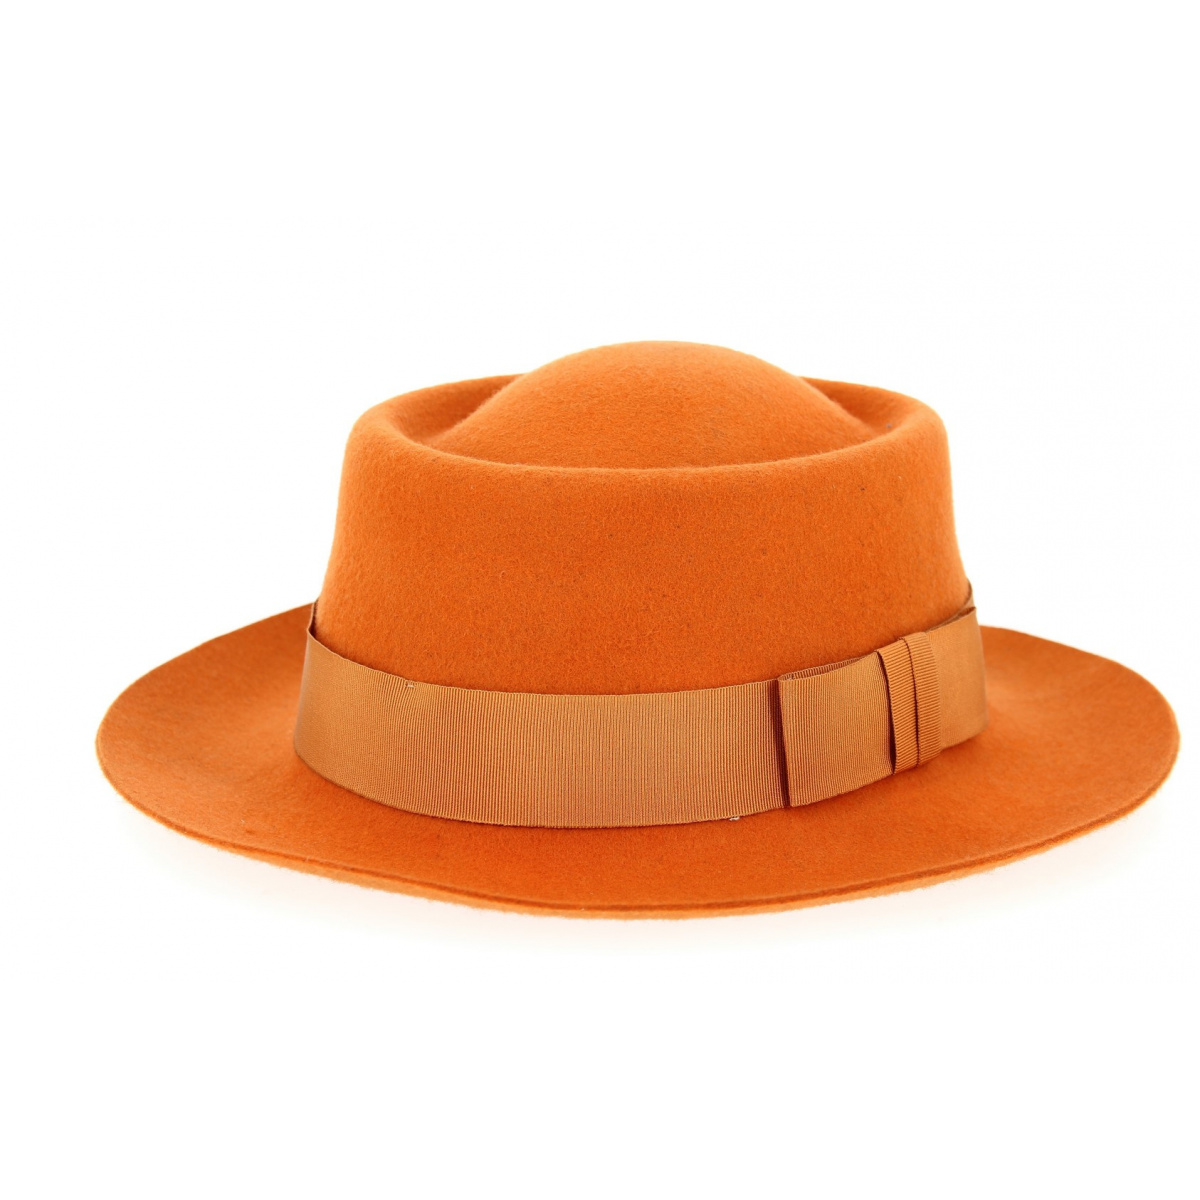 Tour de chapeau traque orange